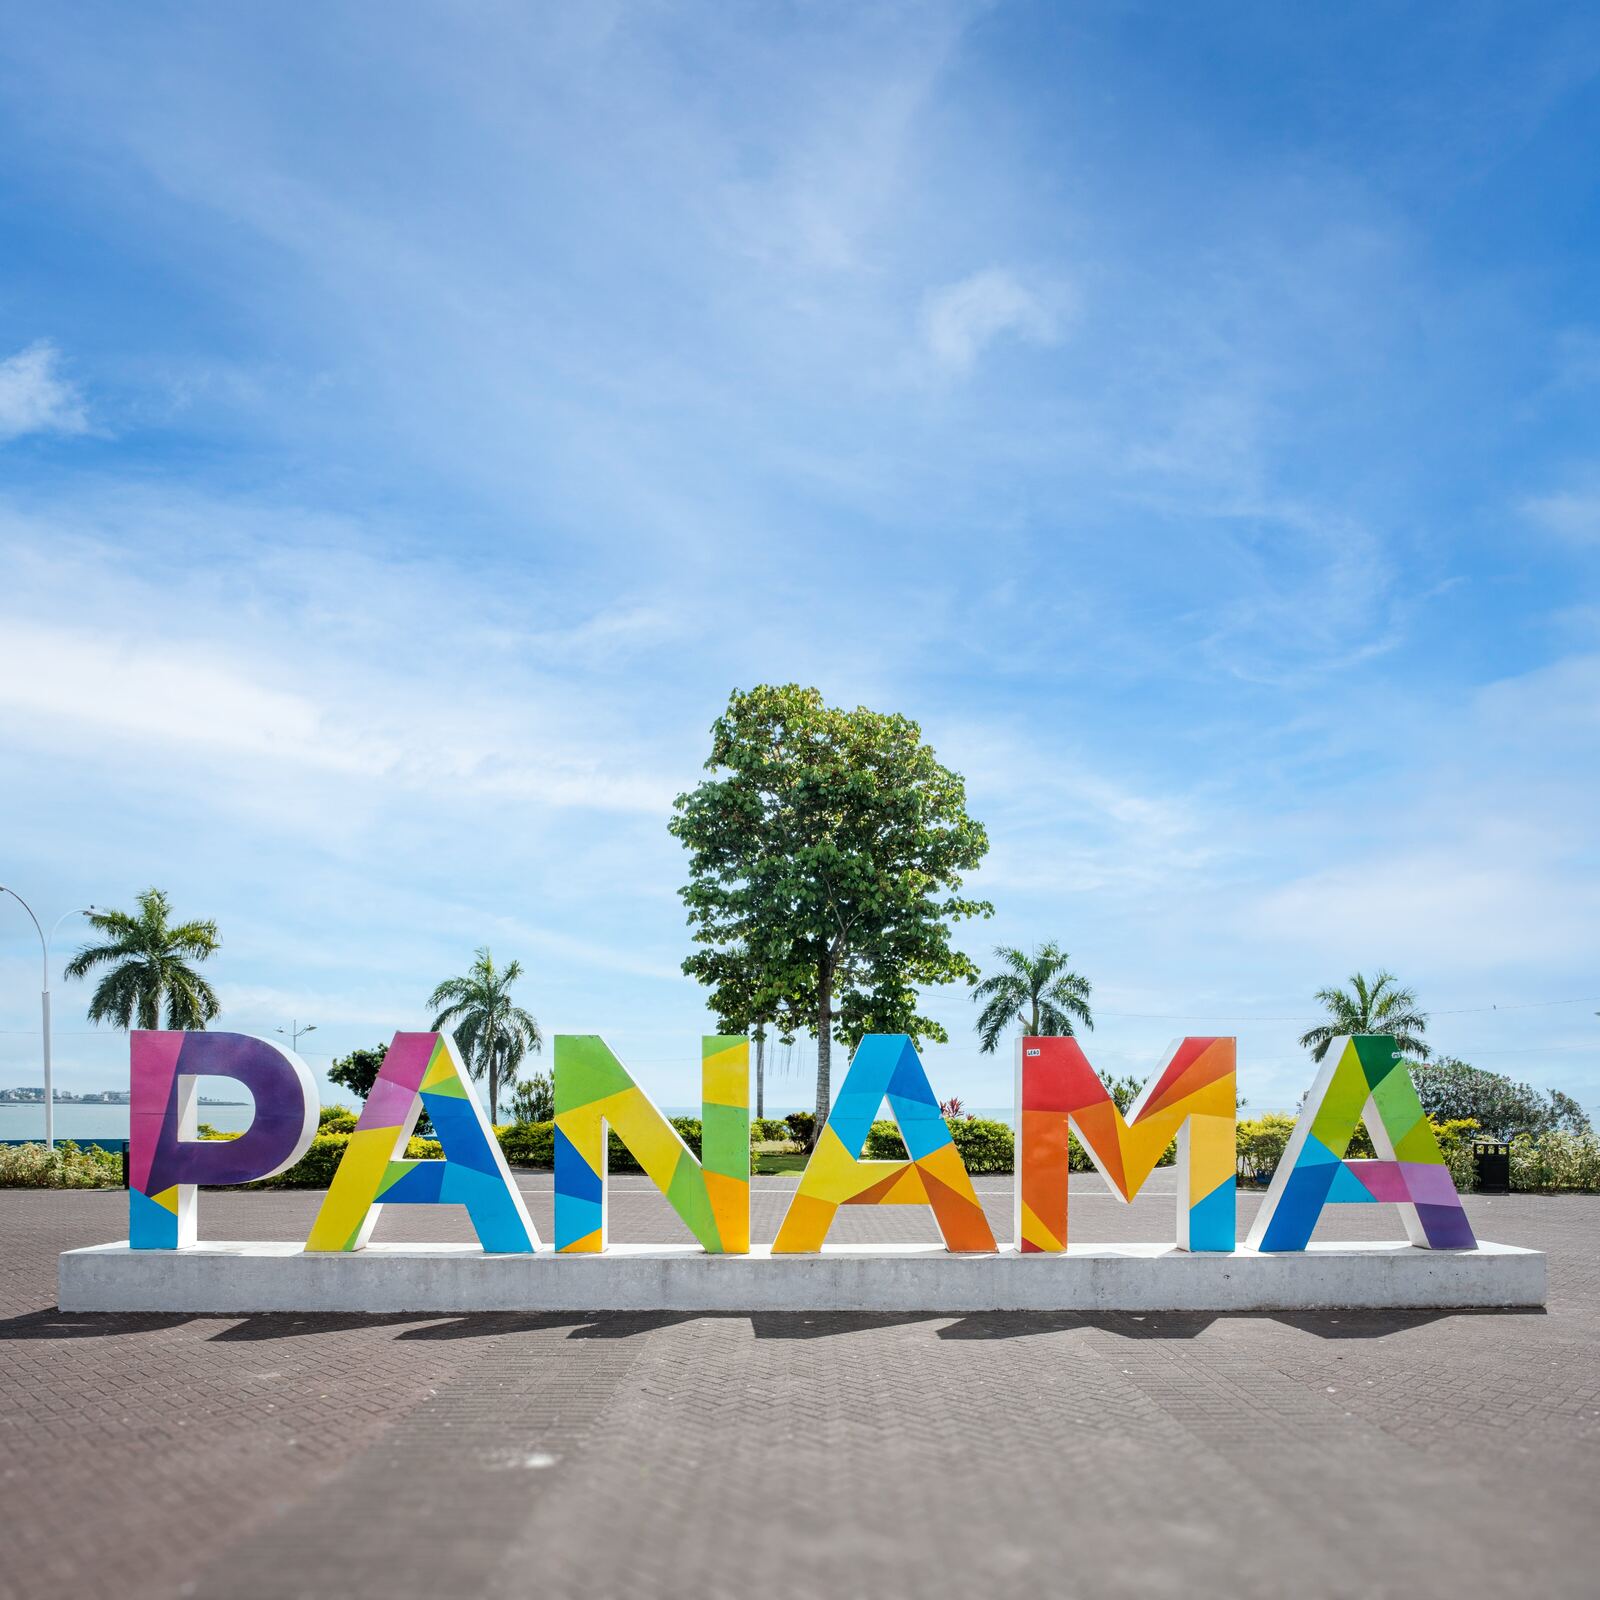 Image of Monumento PANAMÁ by Team PhotoHound